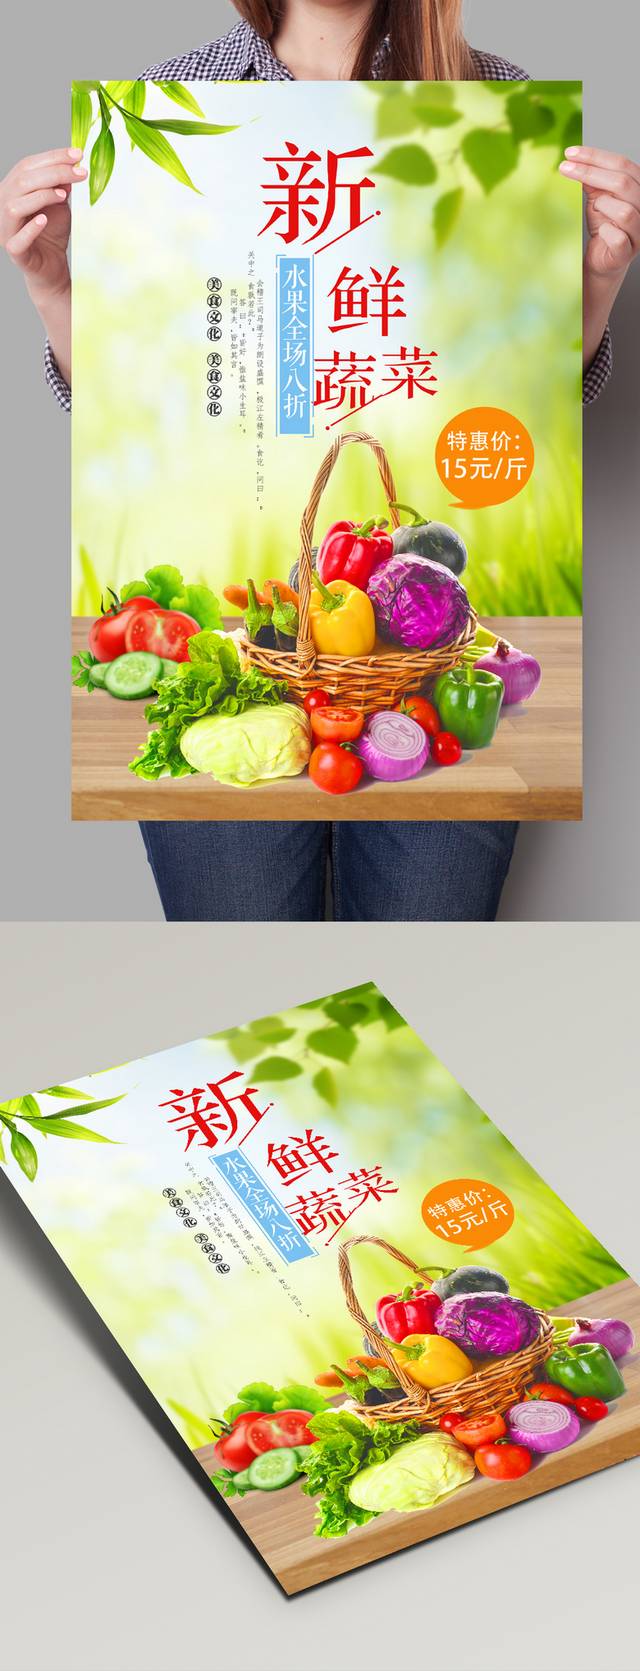 超市新鲜蔬菜宣传海报